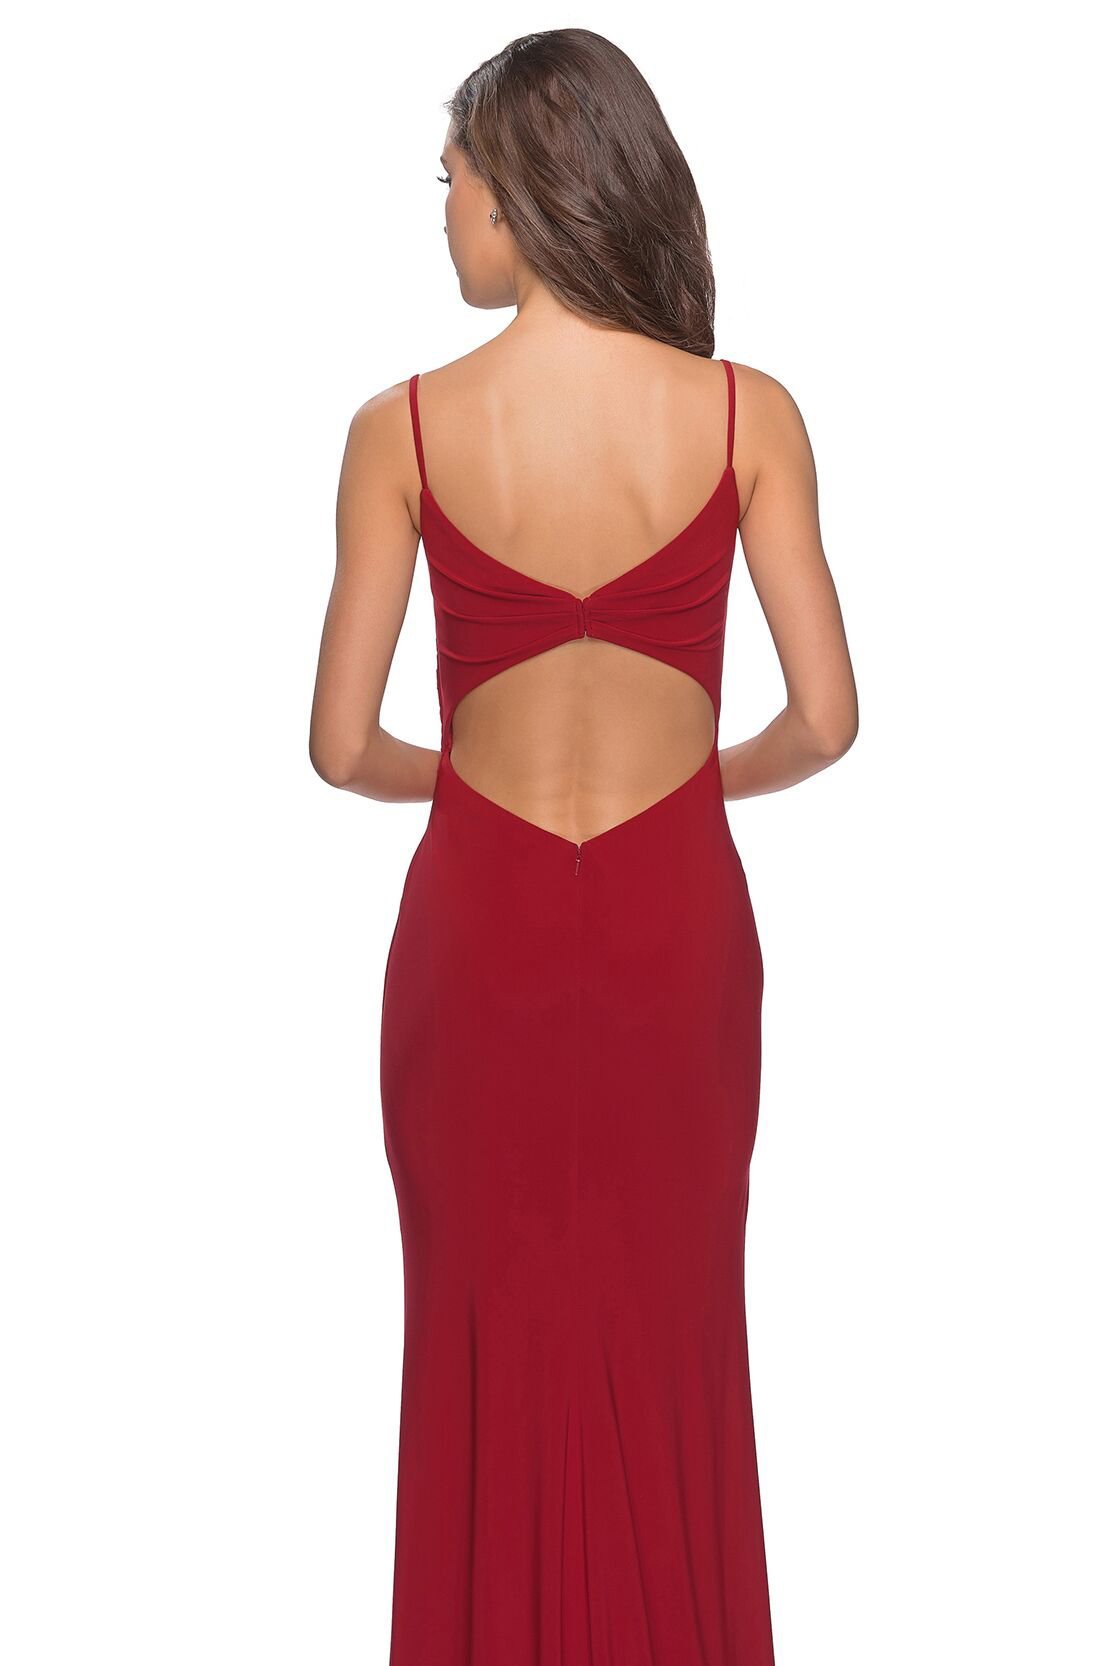 La Femme - V-Neck Surplice High Slit Jersey Evening Dress 28079SC In Red